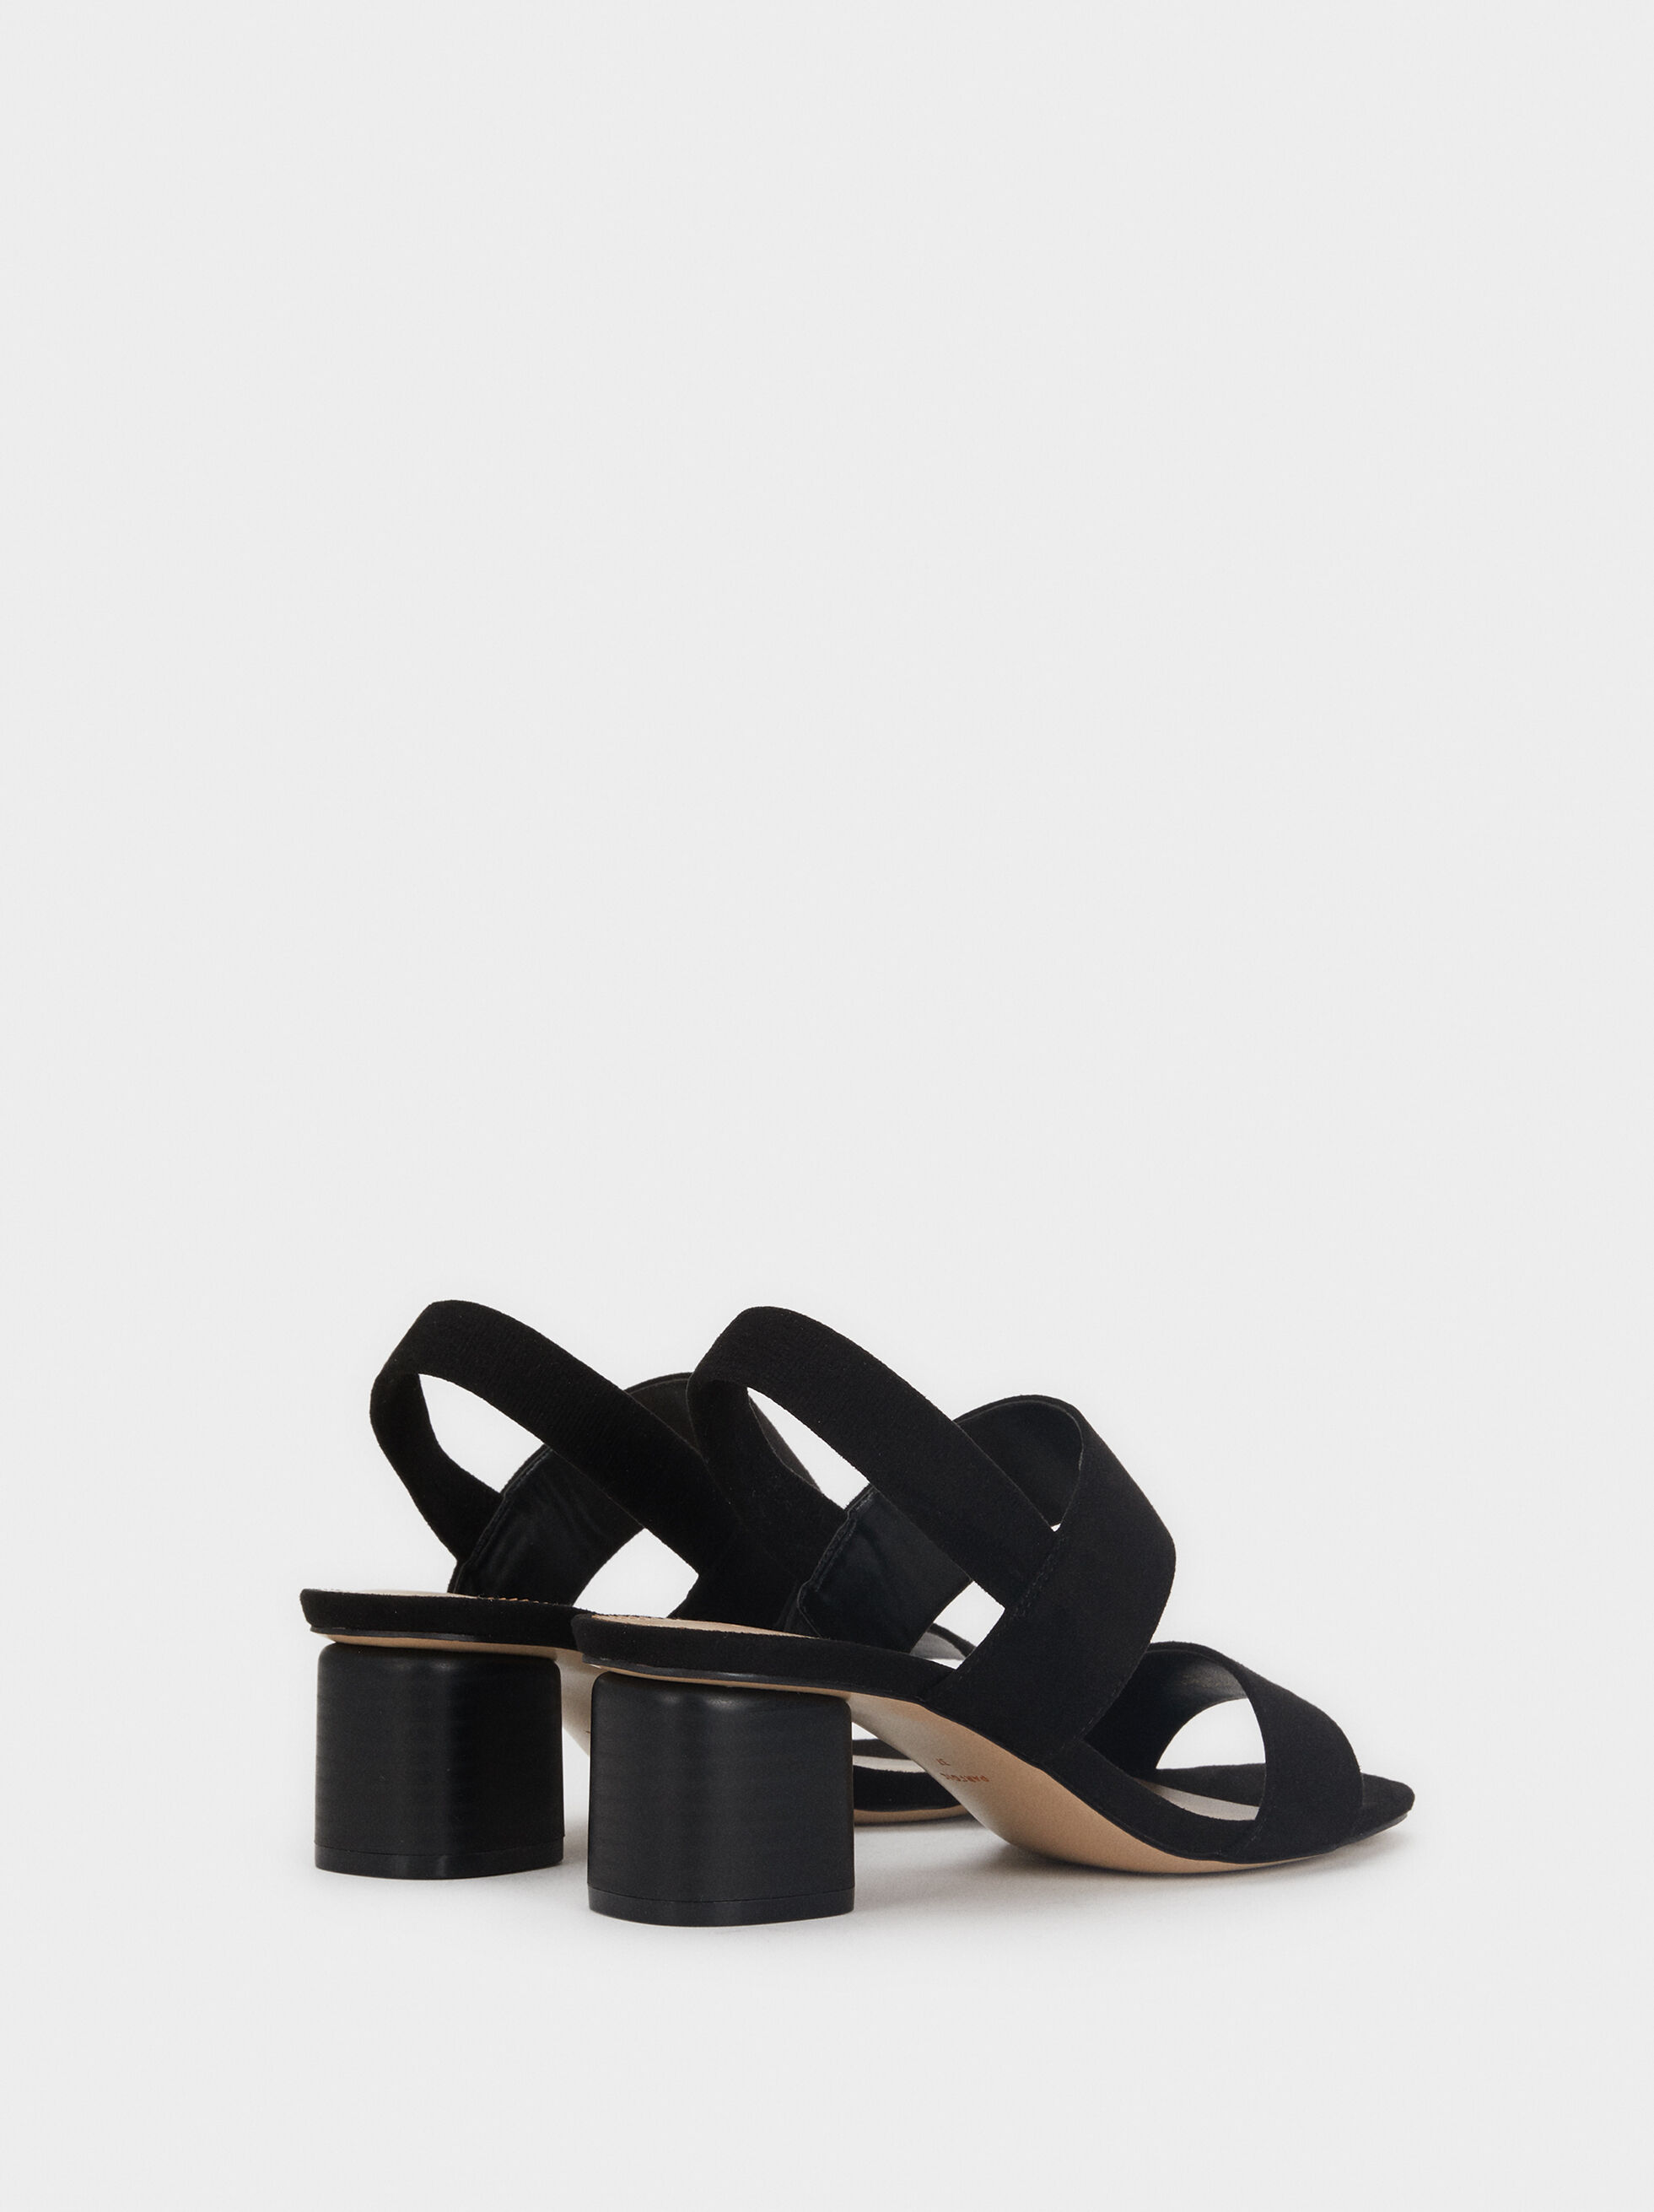 black straps for heels